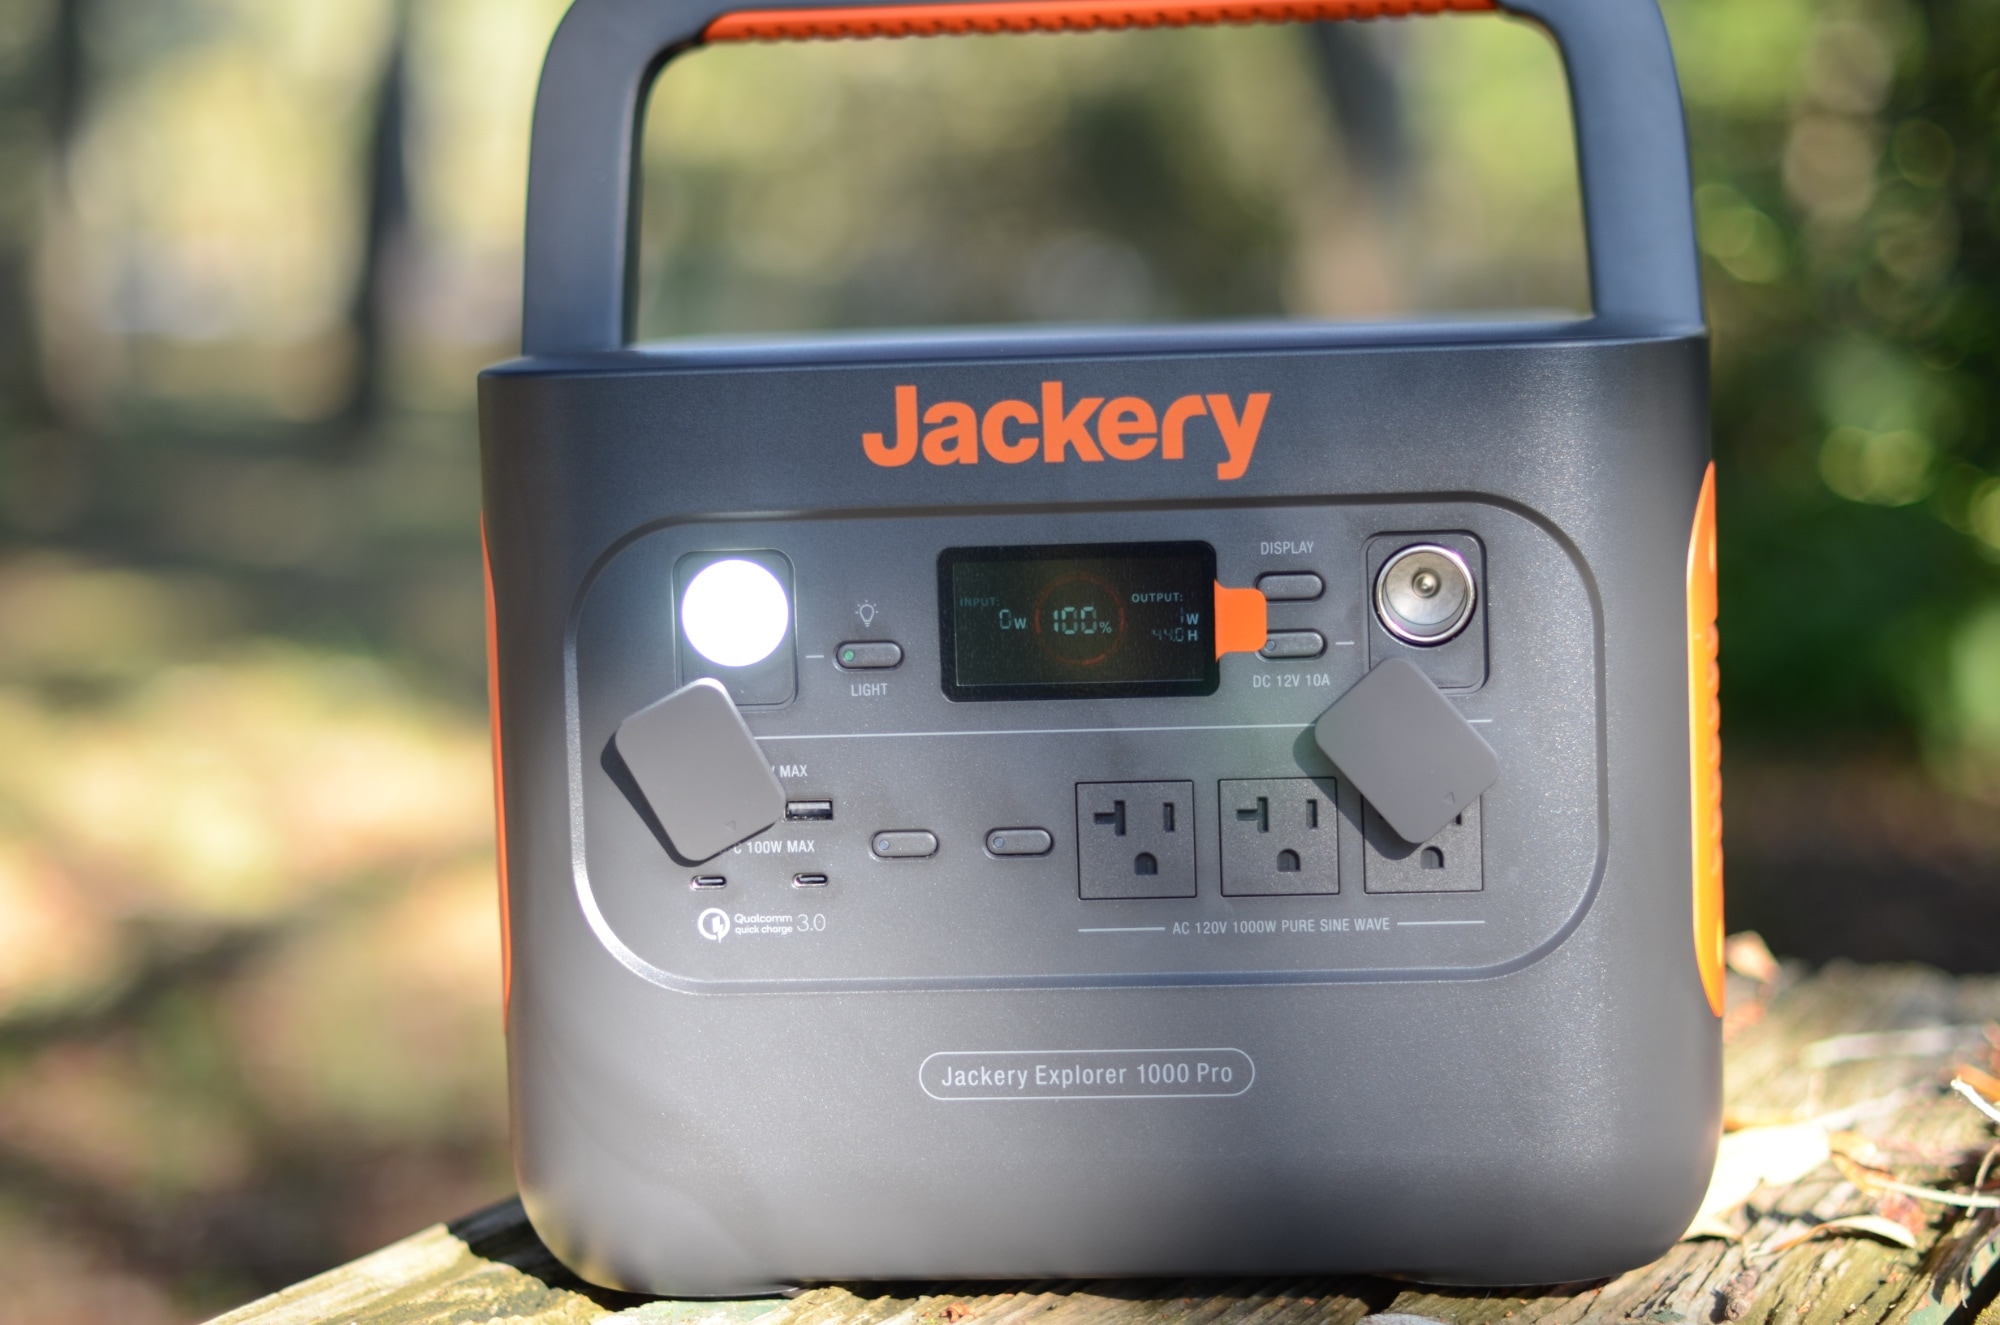 Jackery Solar Generator 1000 Pro front I/O.